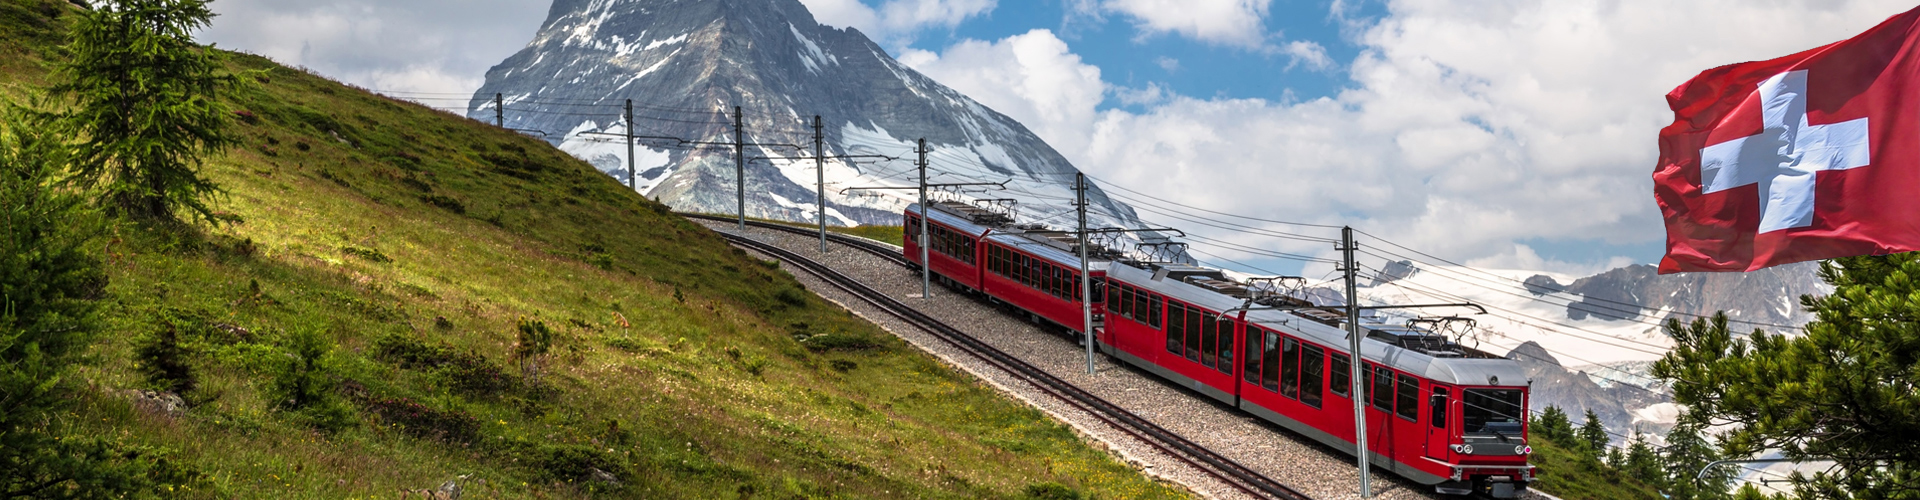 瑞士鐵道全覽18天